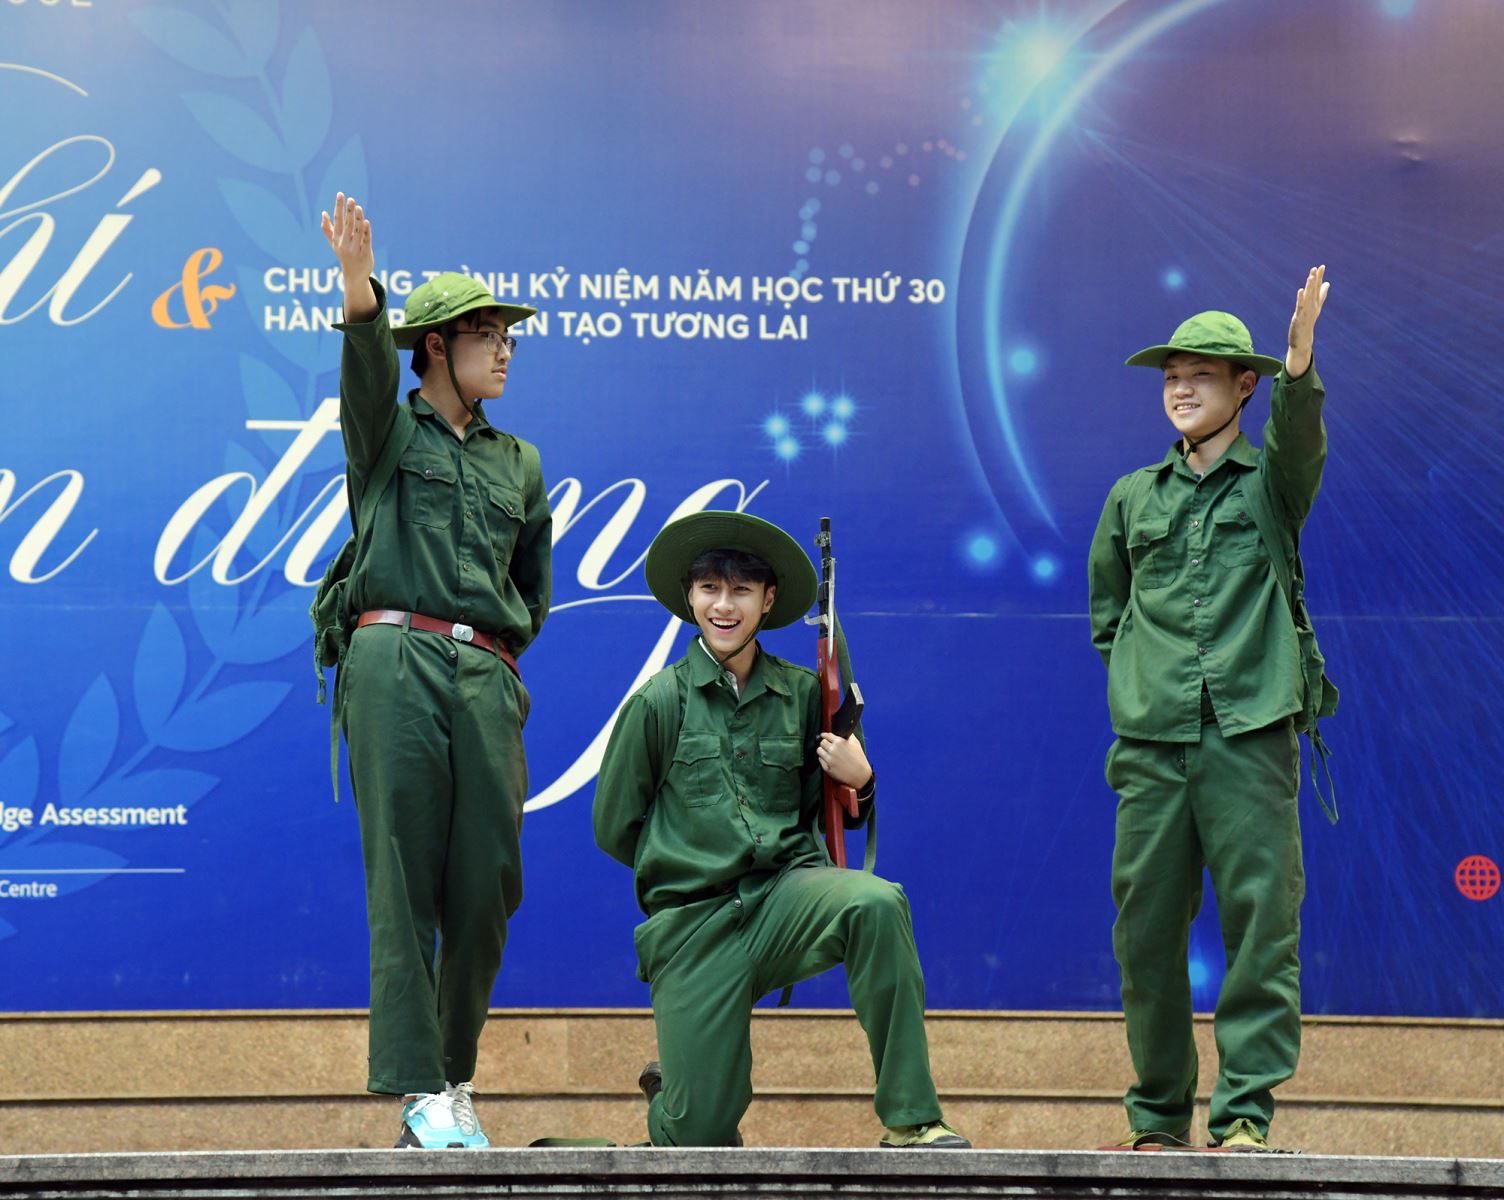 Tuổi trẻ sáng tạo, tự hào là tương lai Việt Nam